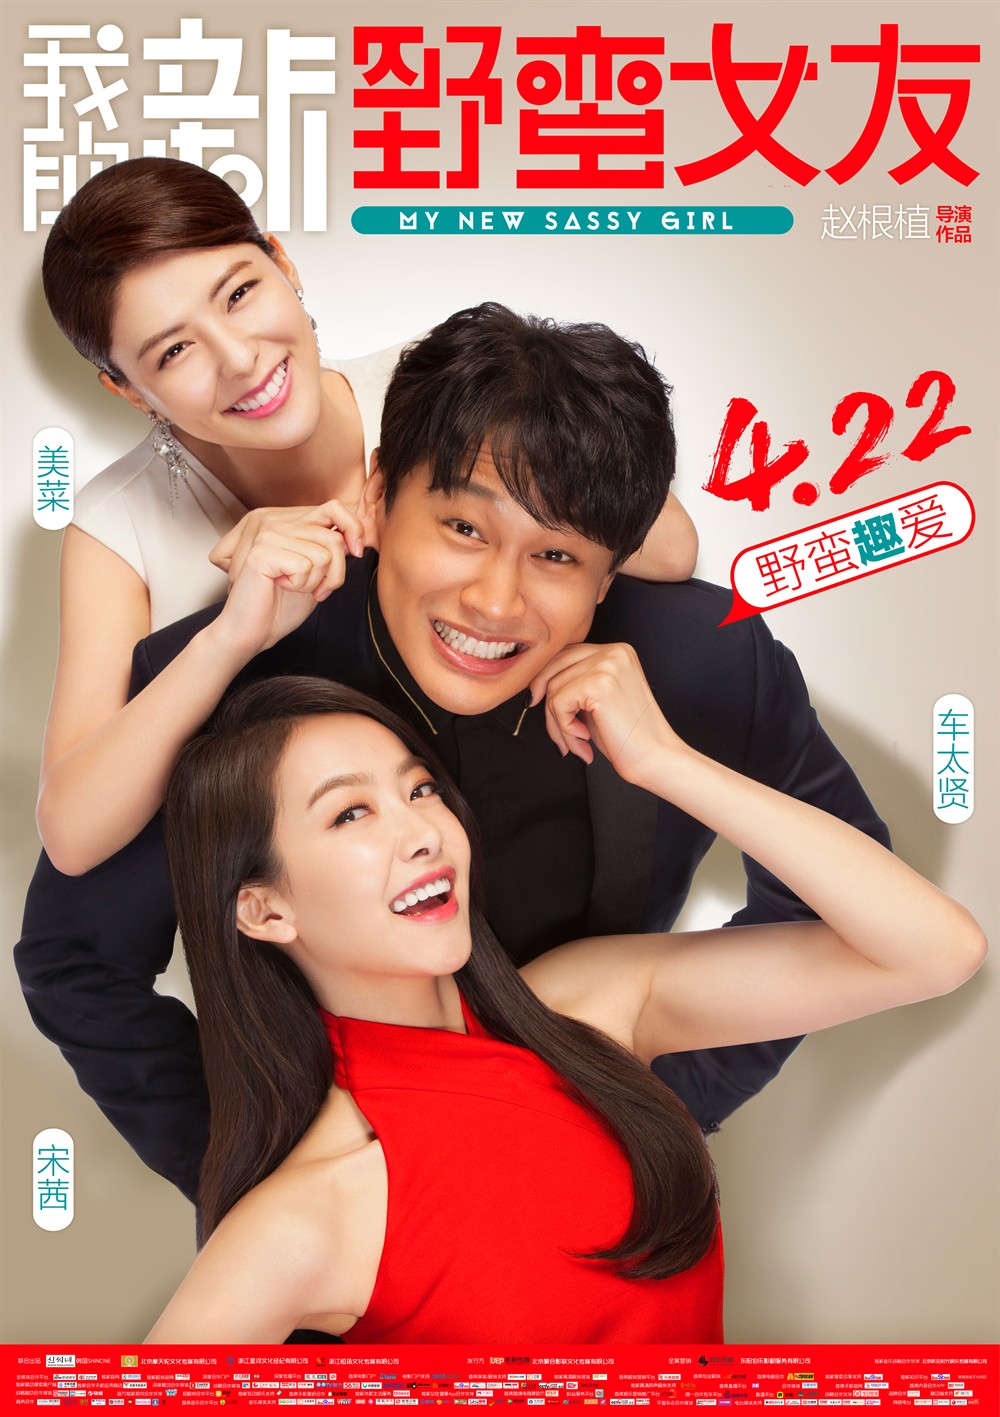 2016年韩国6.1分爱情喜剧片《我的新野蛮女友》HD韩语中字